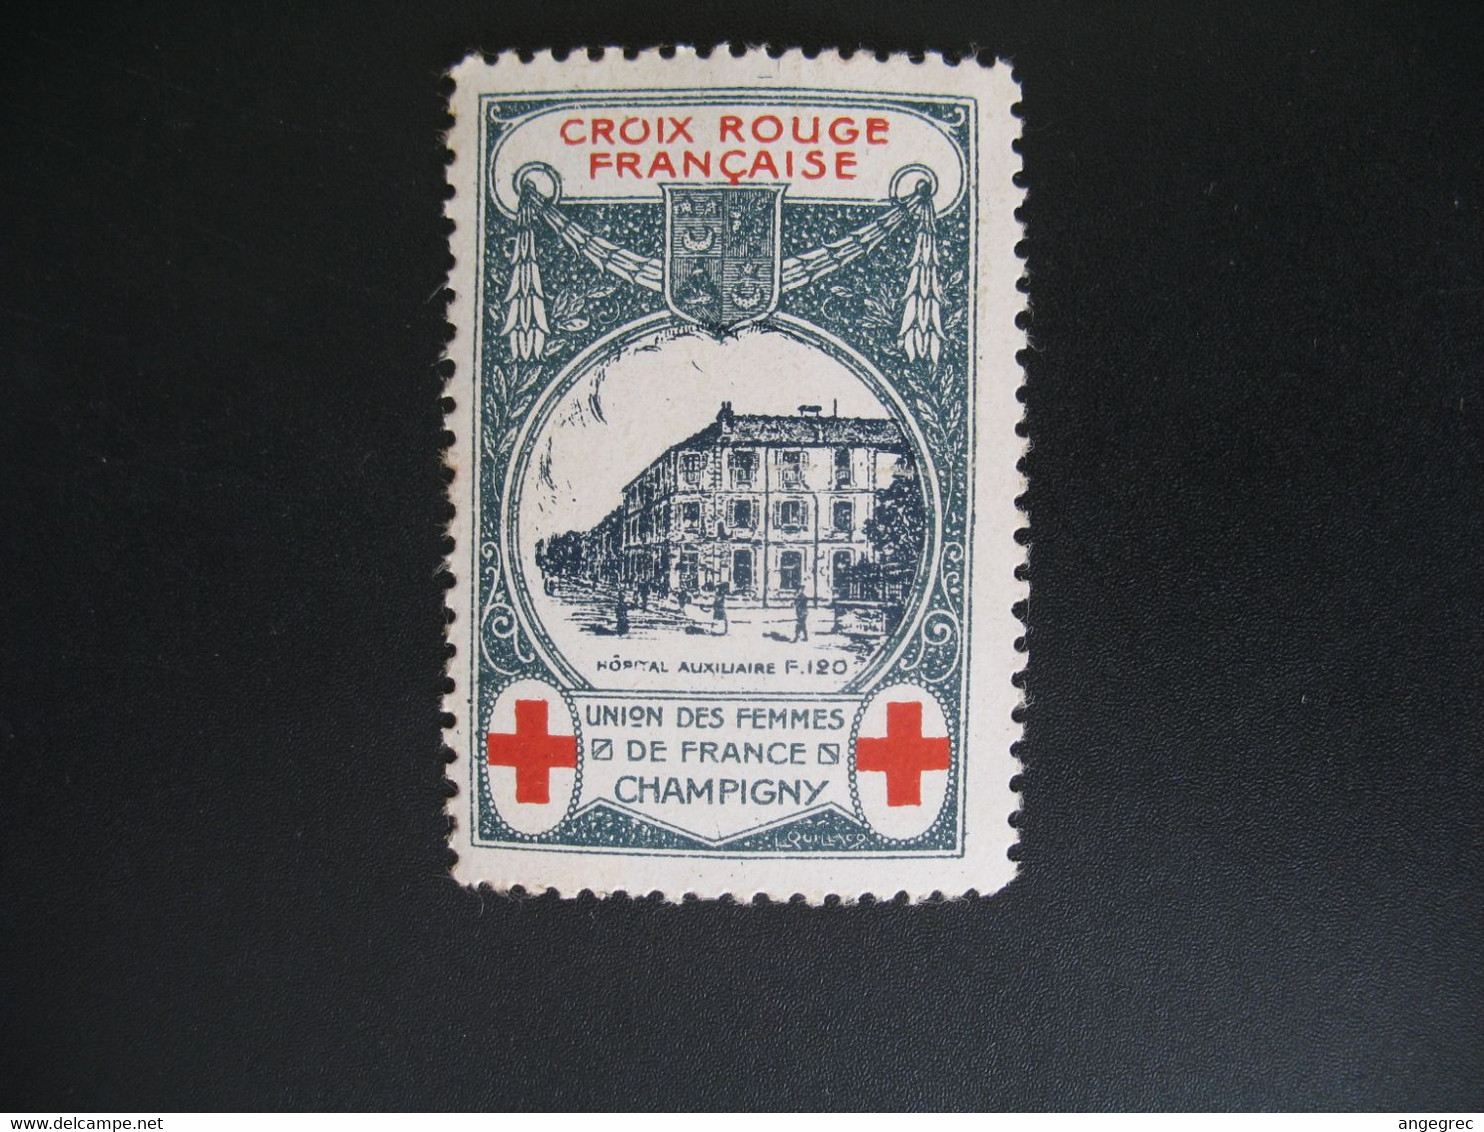 Vignette Militaire Delandre Guerre De 1914 - Croix Rouge - Red Cross -   Neuf ** Champigny Union Des Femmes  De France - Croix Rouge